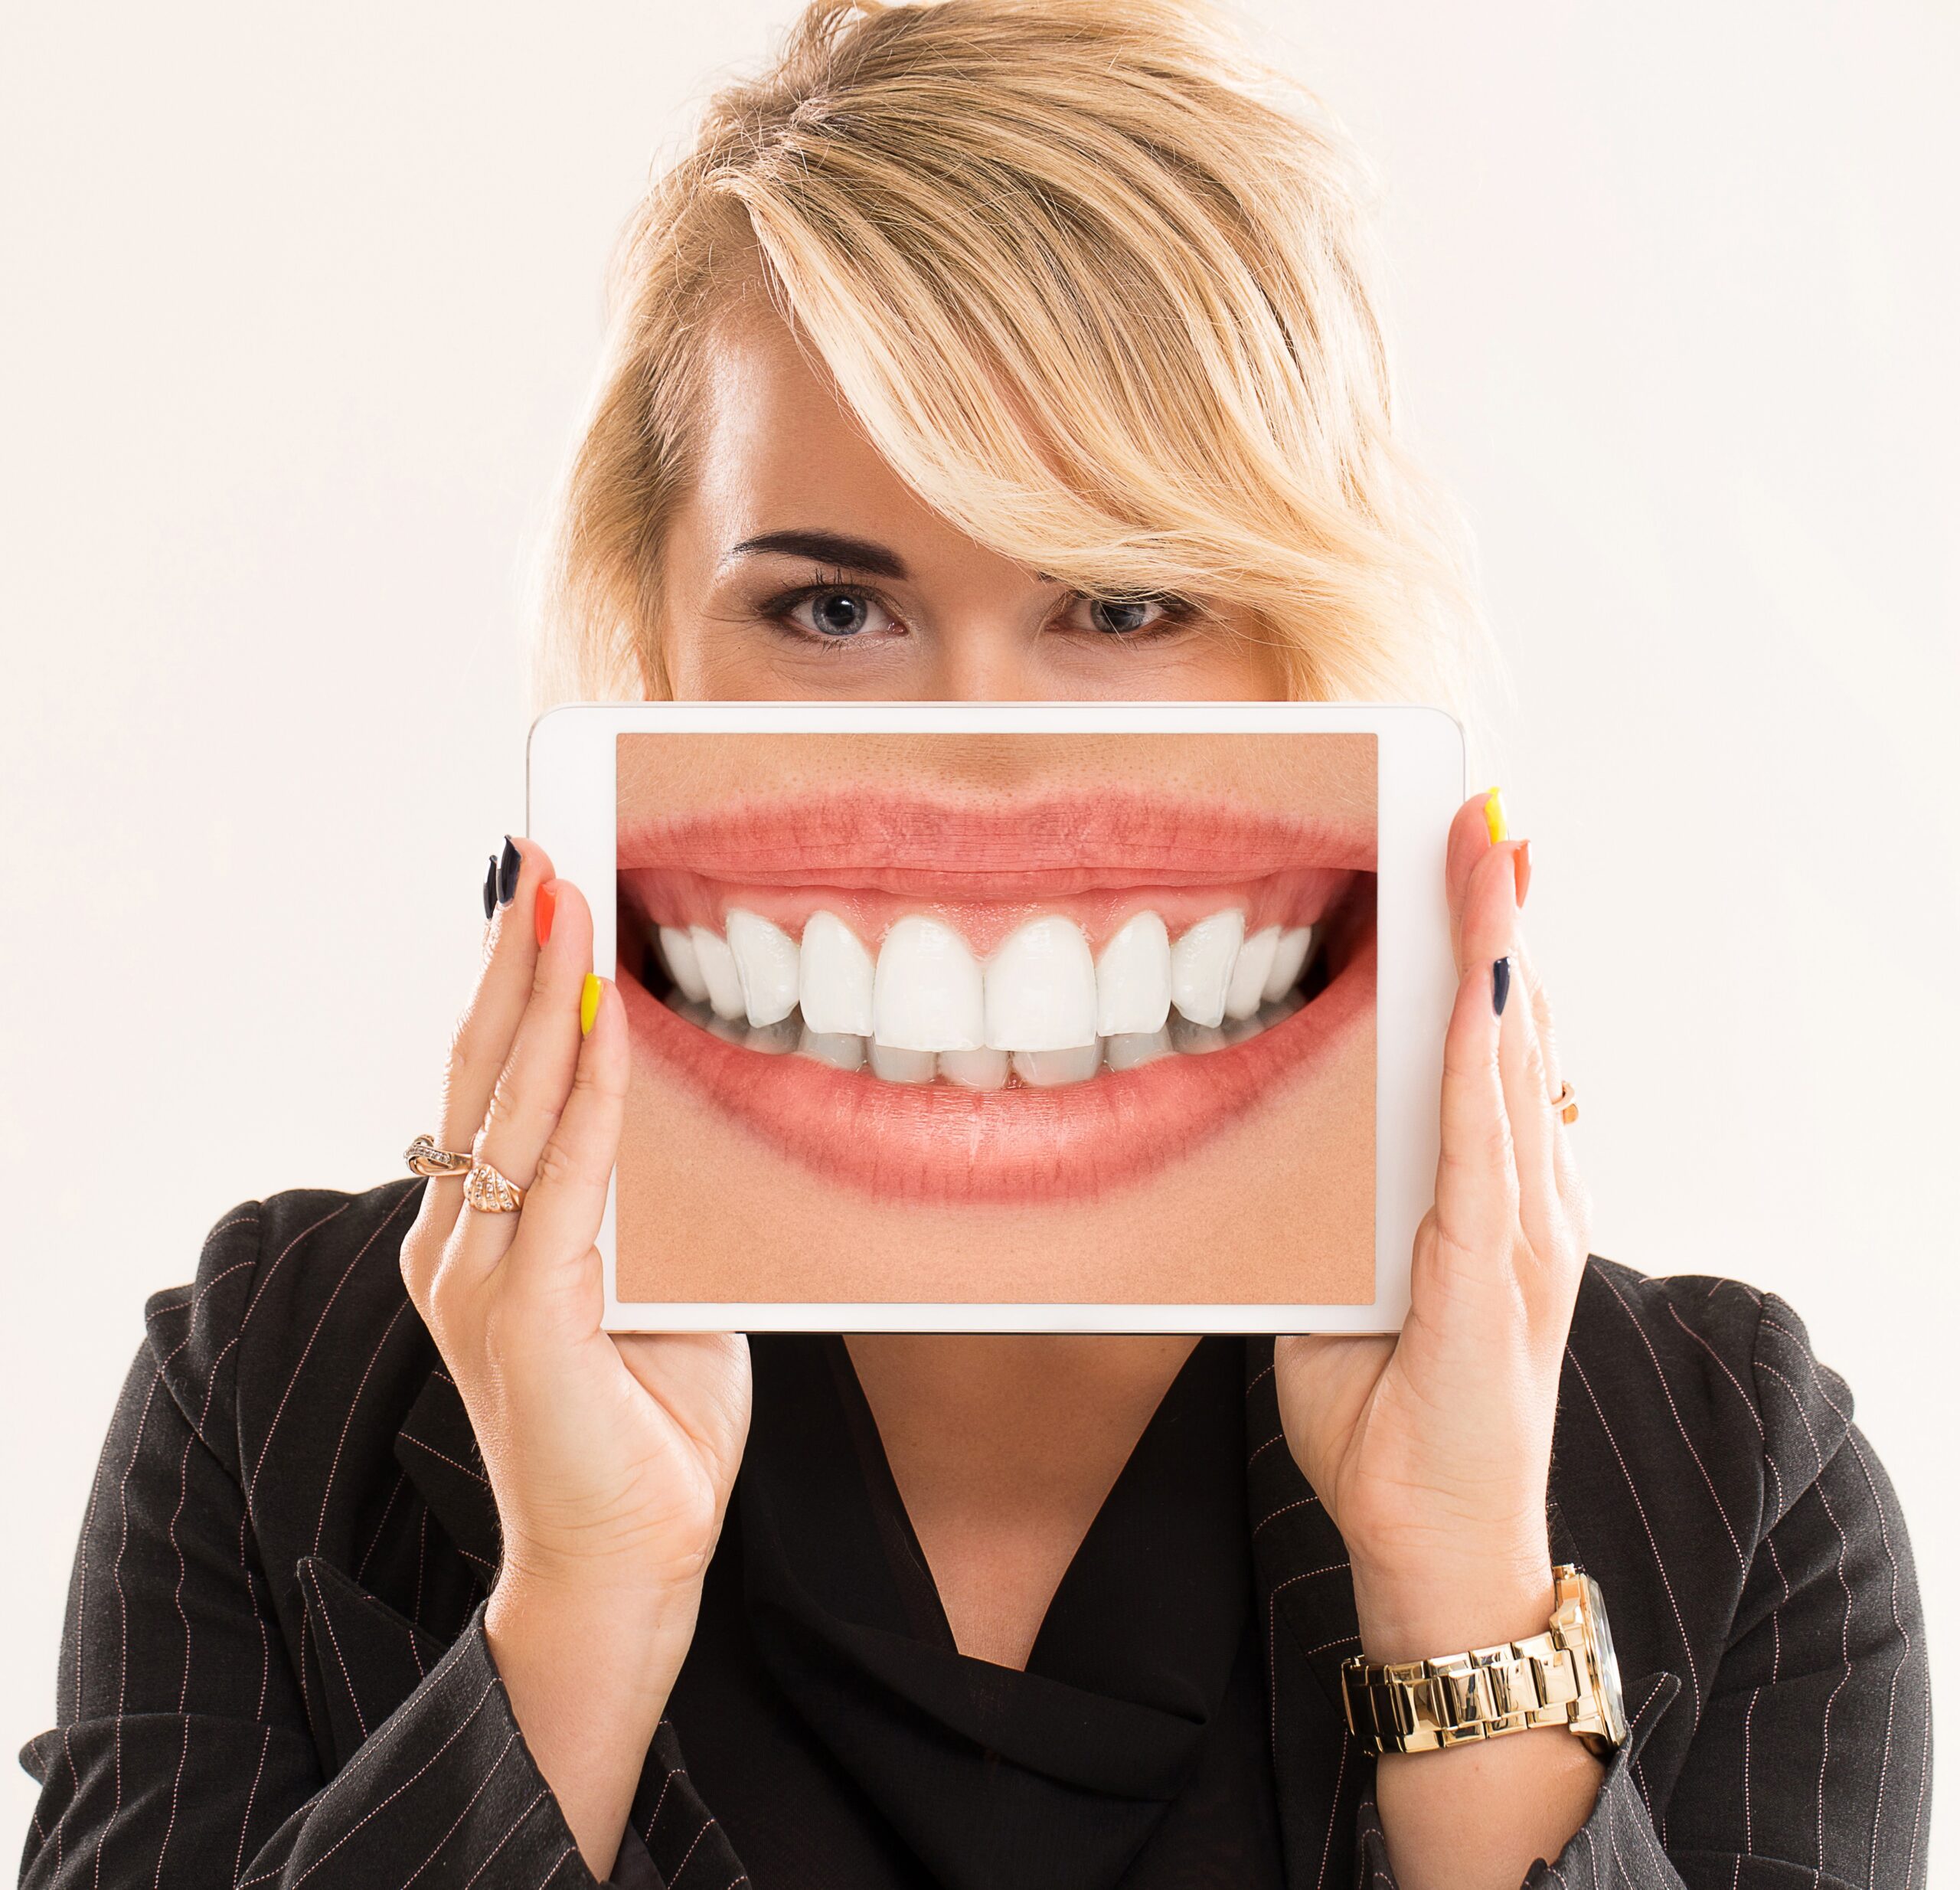 تعریف درمان بلیچینگ یا سفید کردن دندان_ مزایا و خطرات بلیچینگ